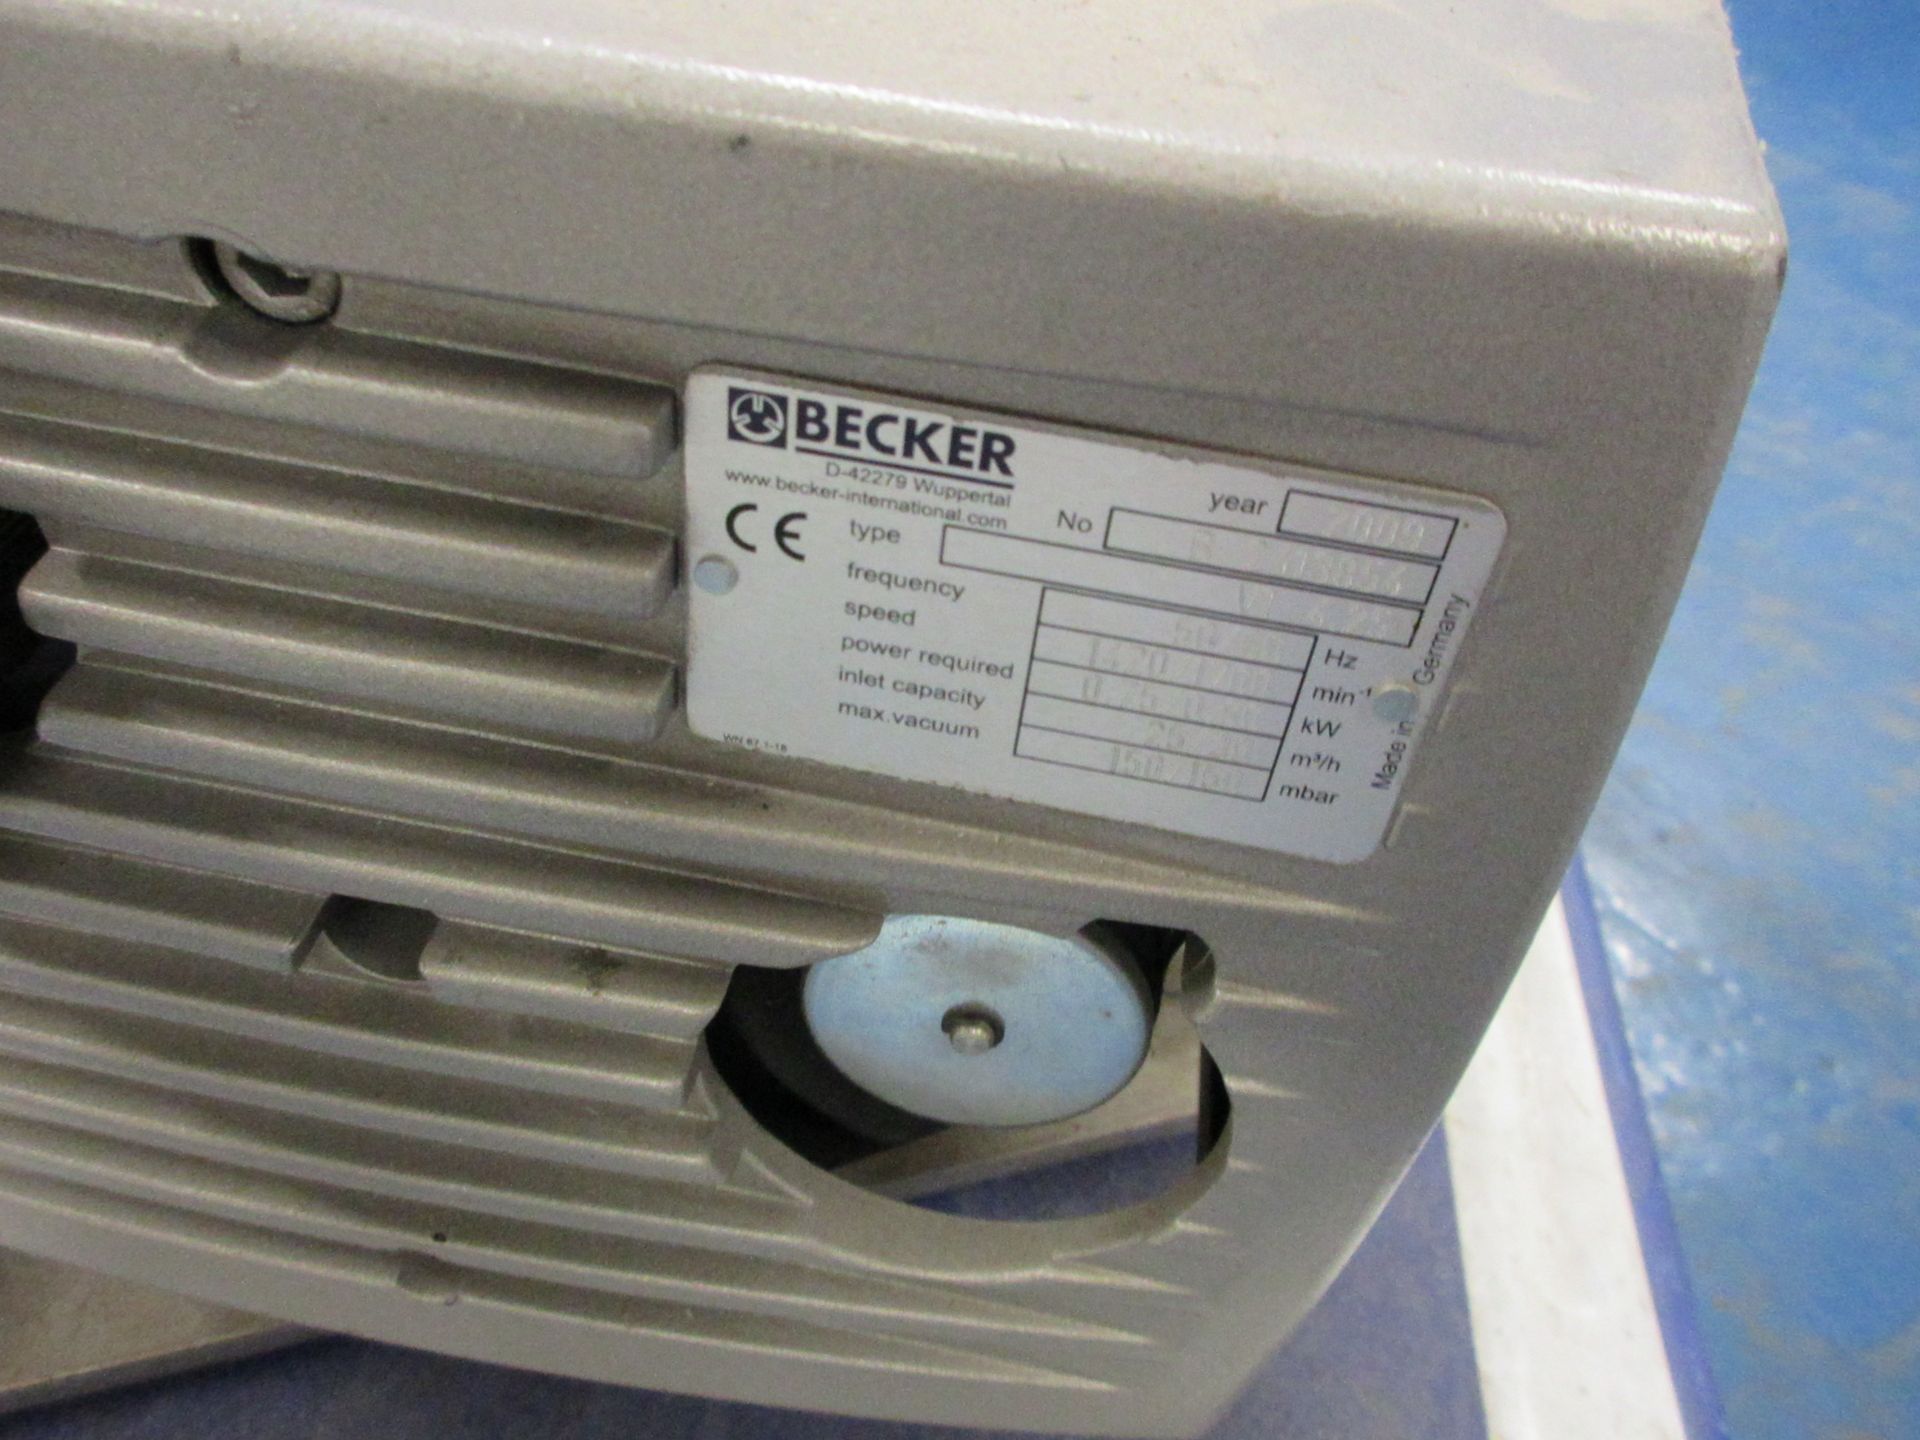 Becker vacuum pump, type VT40-25, serial no. B2413854 inlet capacity 25/30, max vacuum 150/ - Image 3 of 4